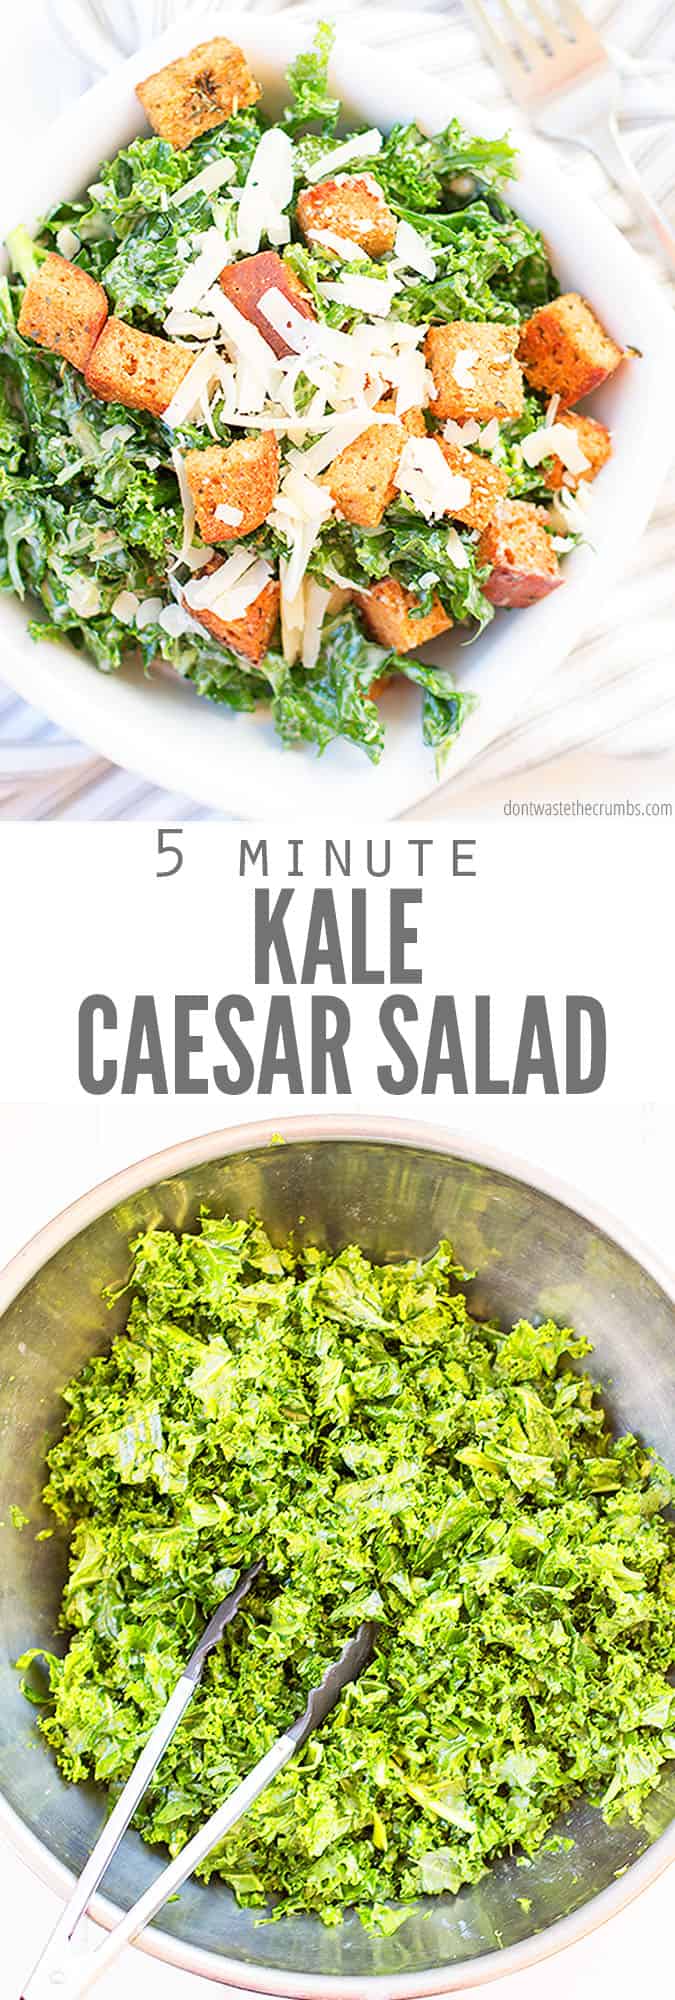 5 Minute Kale Caesar Salad - Quick, Easy, & Versatile